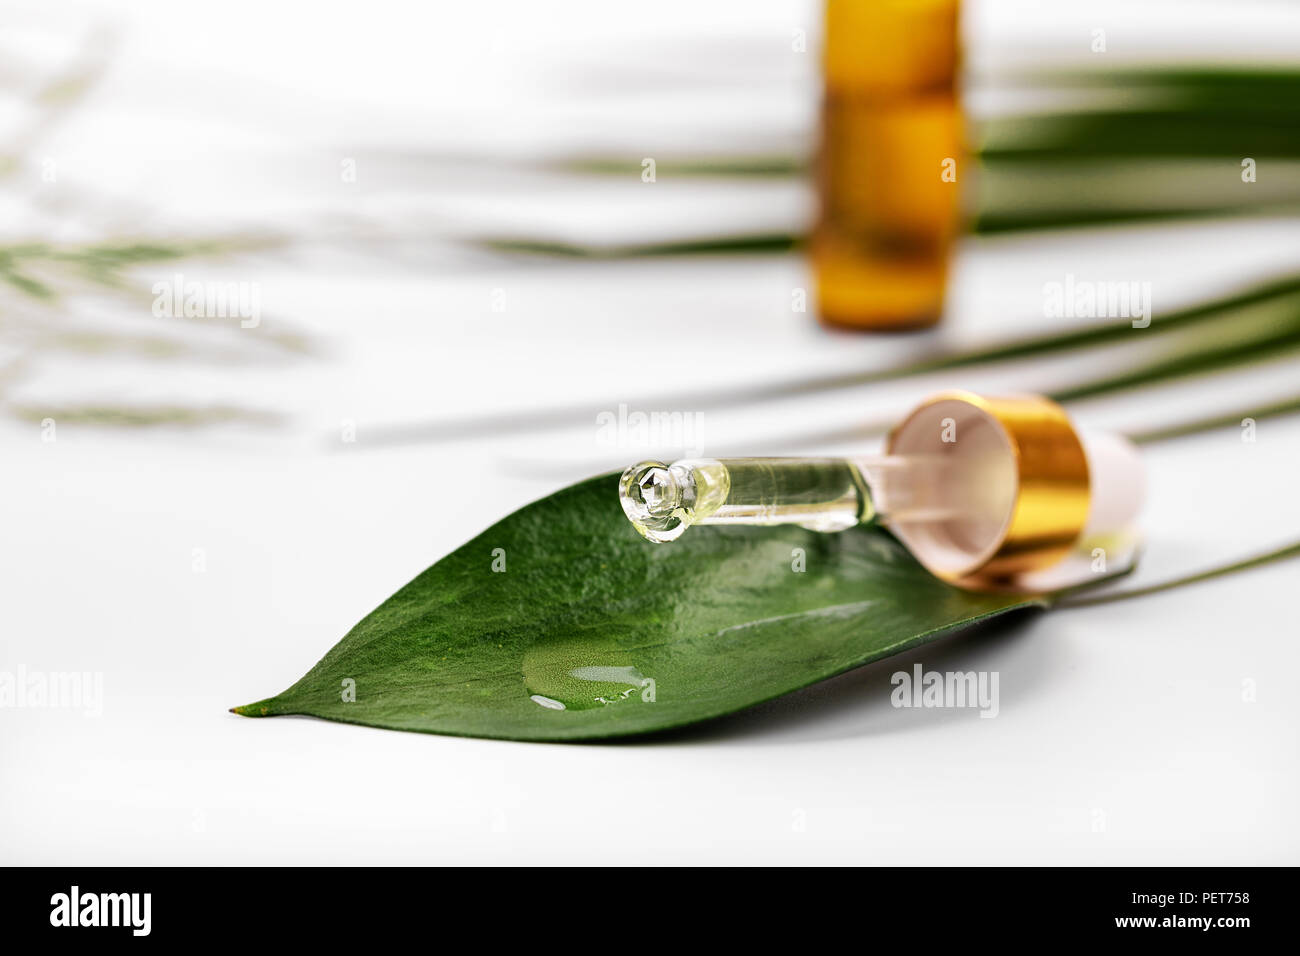 La medicina herbaria o cosméticos - el aceite caiga sobre la hoja verde del gotero Foto de stock